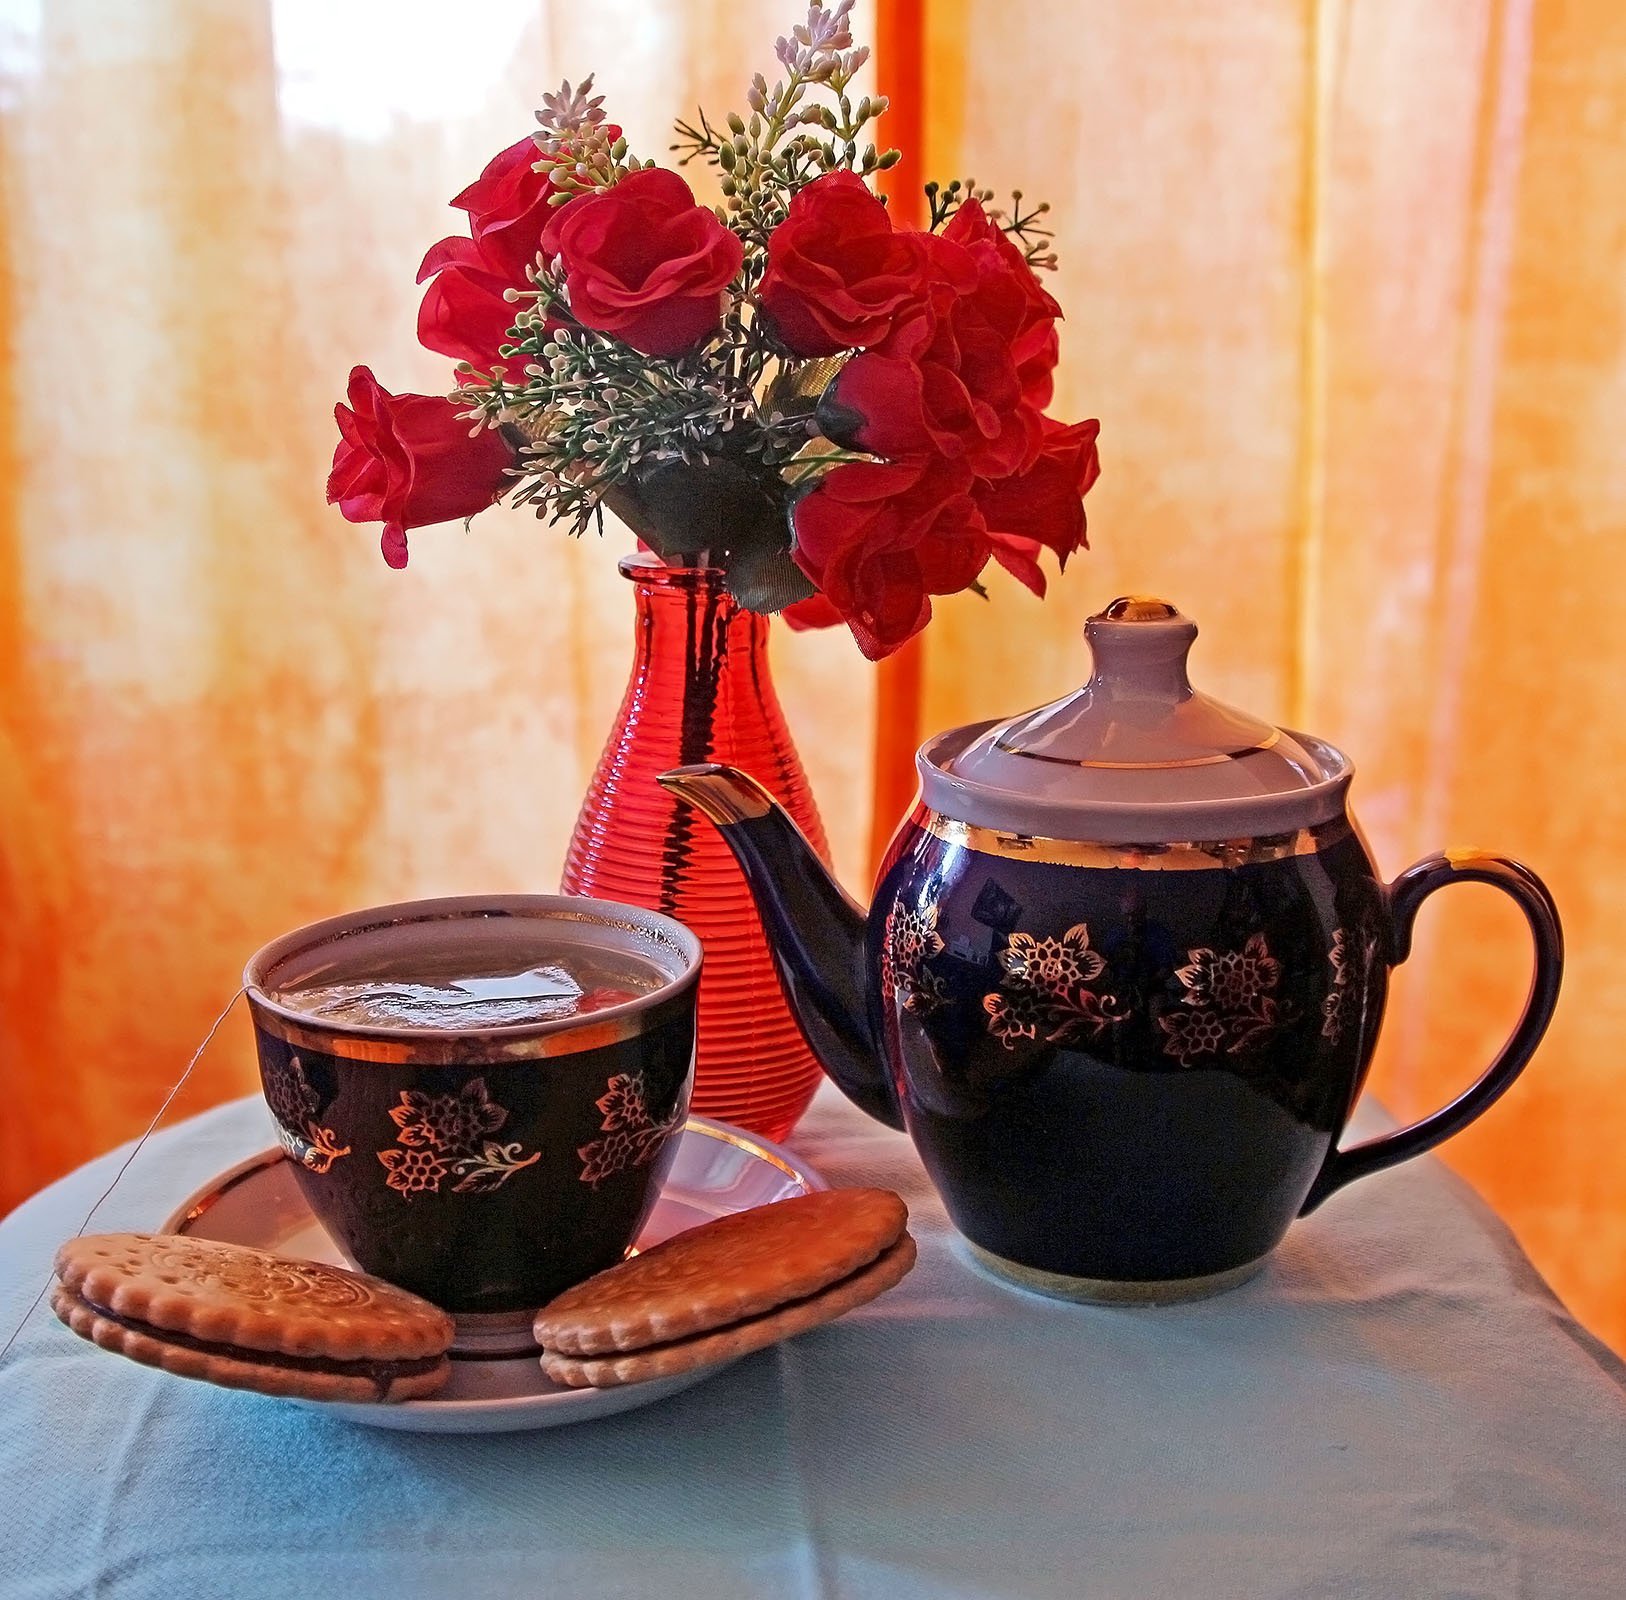 Будьте счастливы в этот вечер. Пожелания приятного чаепития. Вечернего чаепития с пожеланиями. Приятного чаепития и отличного настроения. Приятного вечера чай.